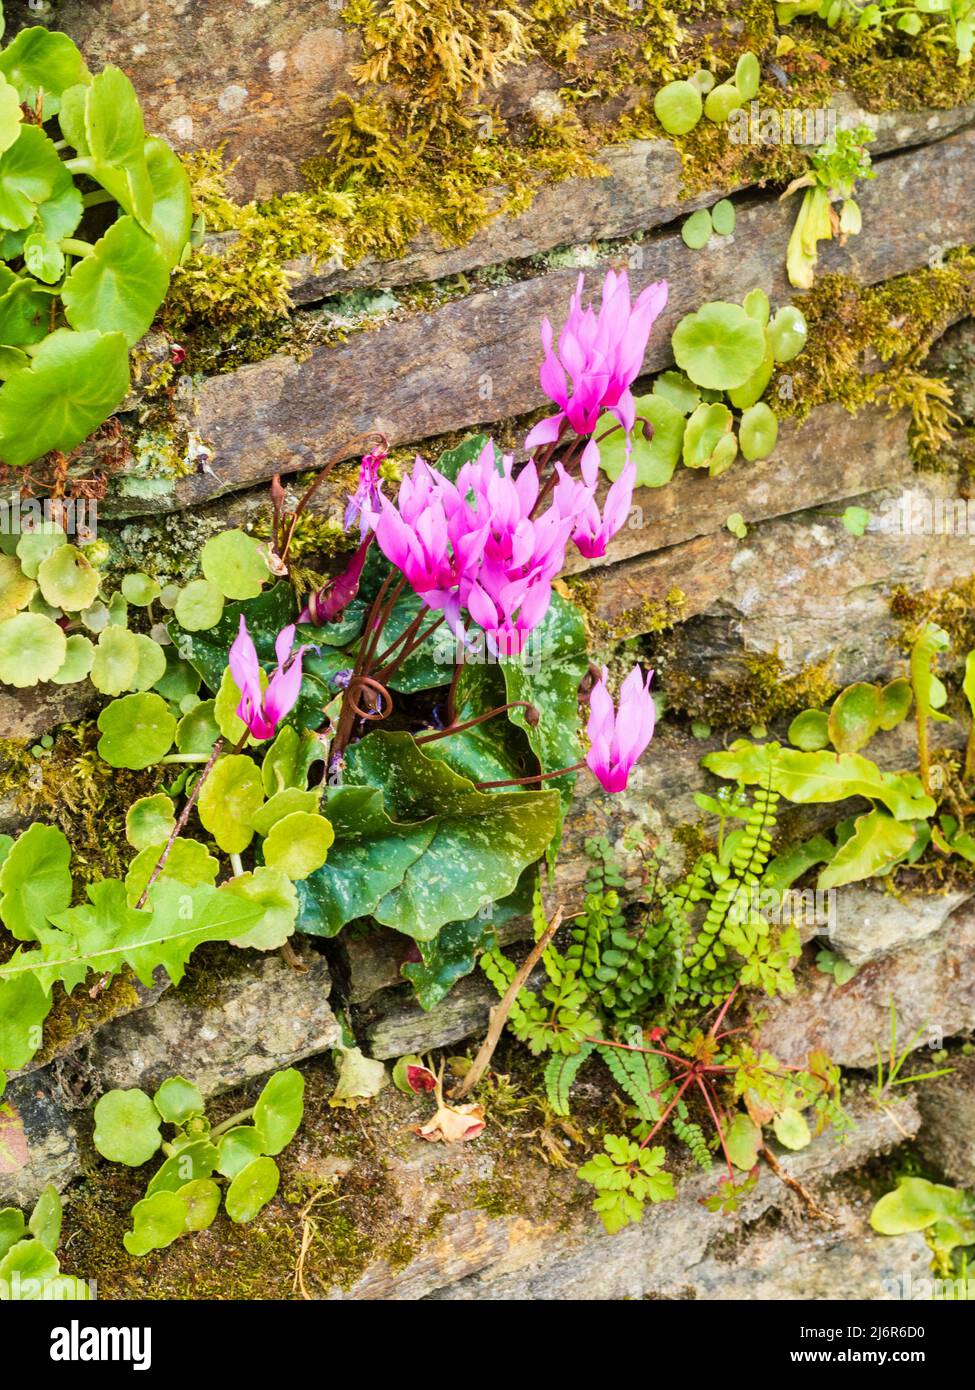 Pan de sowbread de primavera, Cyclamen repandum de flor rosa, creciendo en una grieta en una antigua pared de jardín de piedra seca Foto de stock